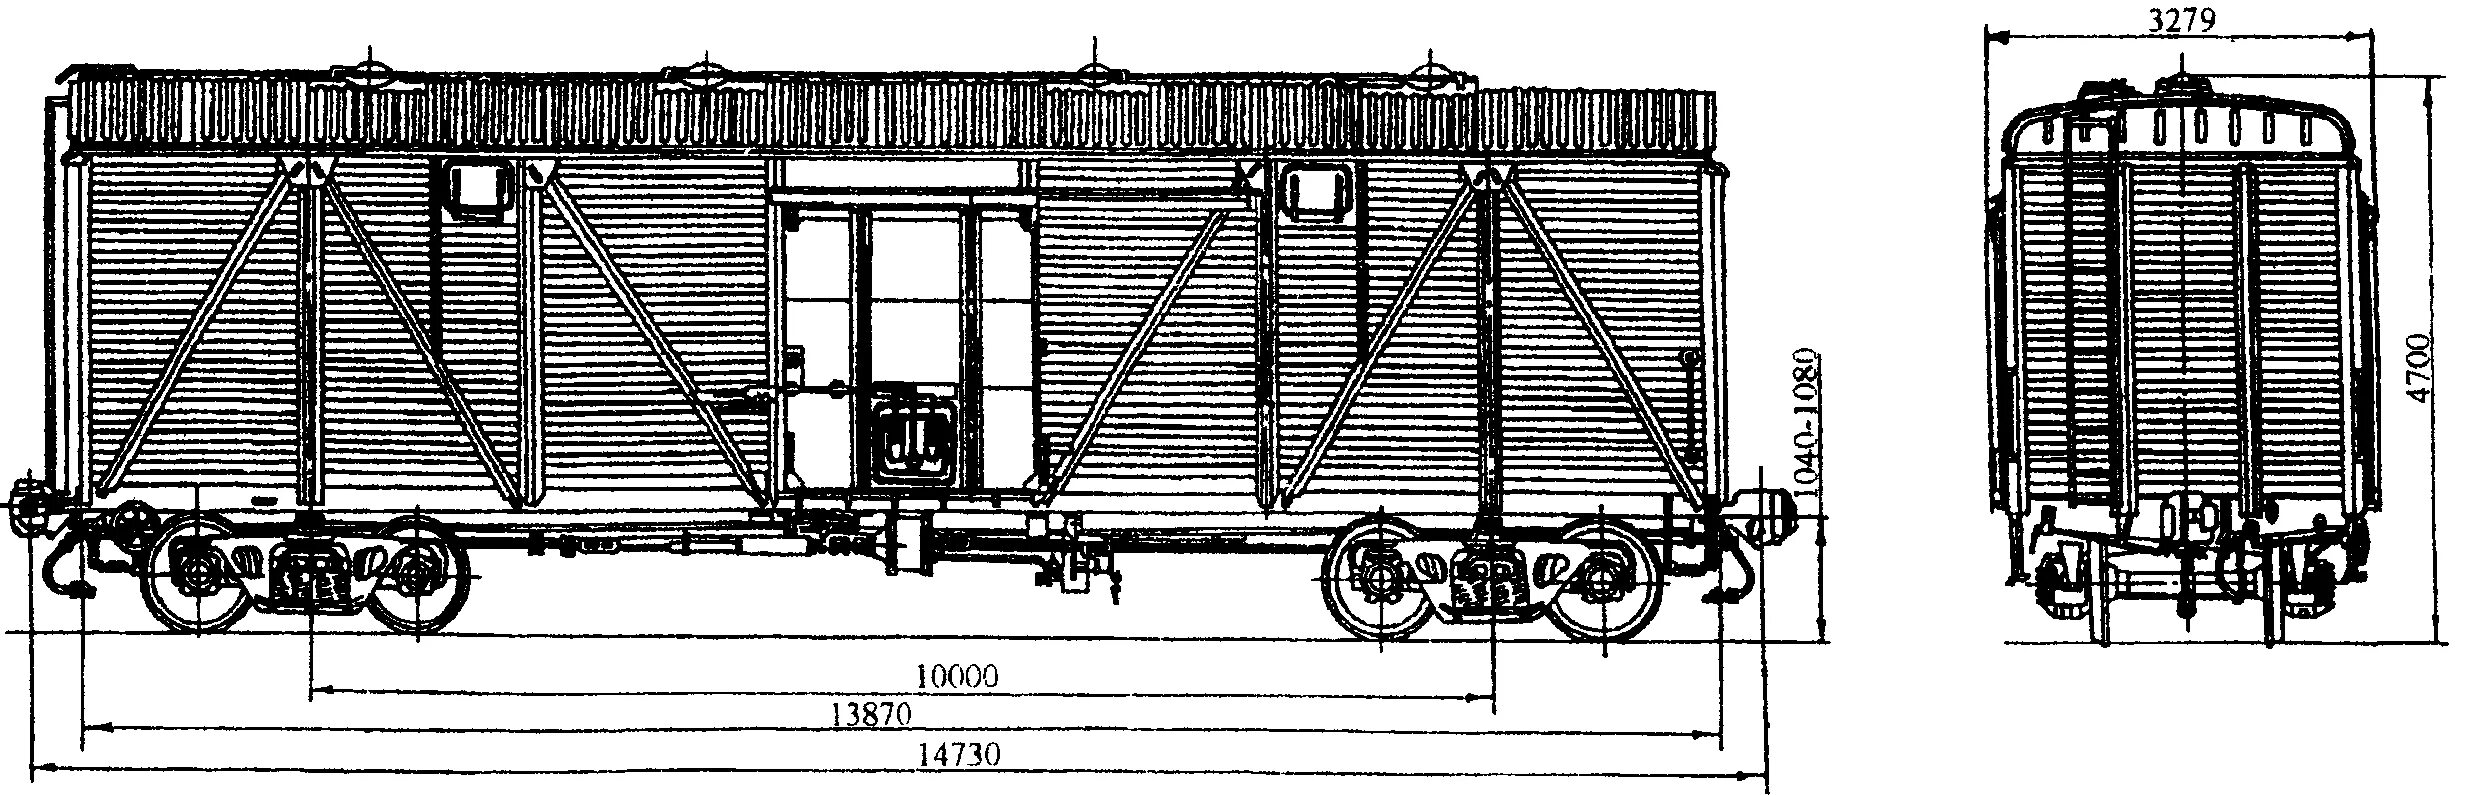 Какой длины железнодорожный вагон